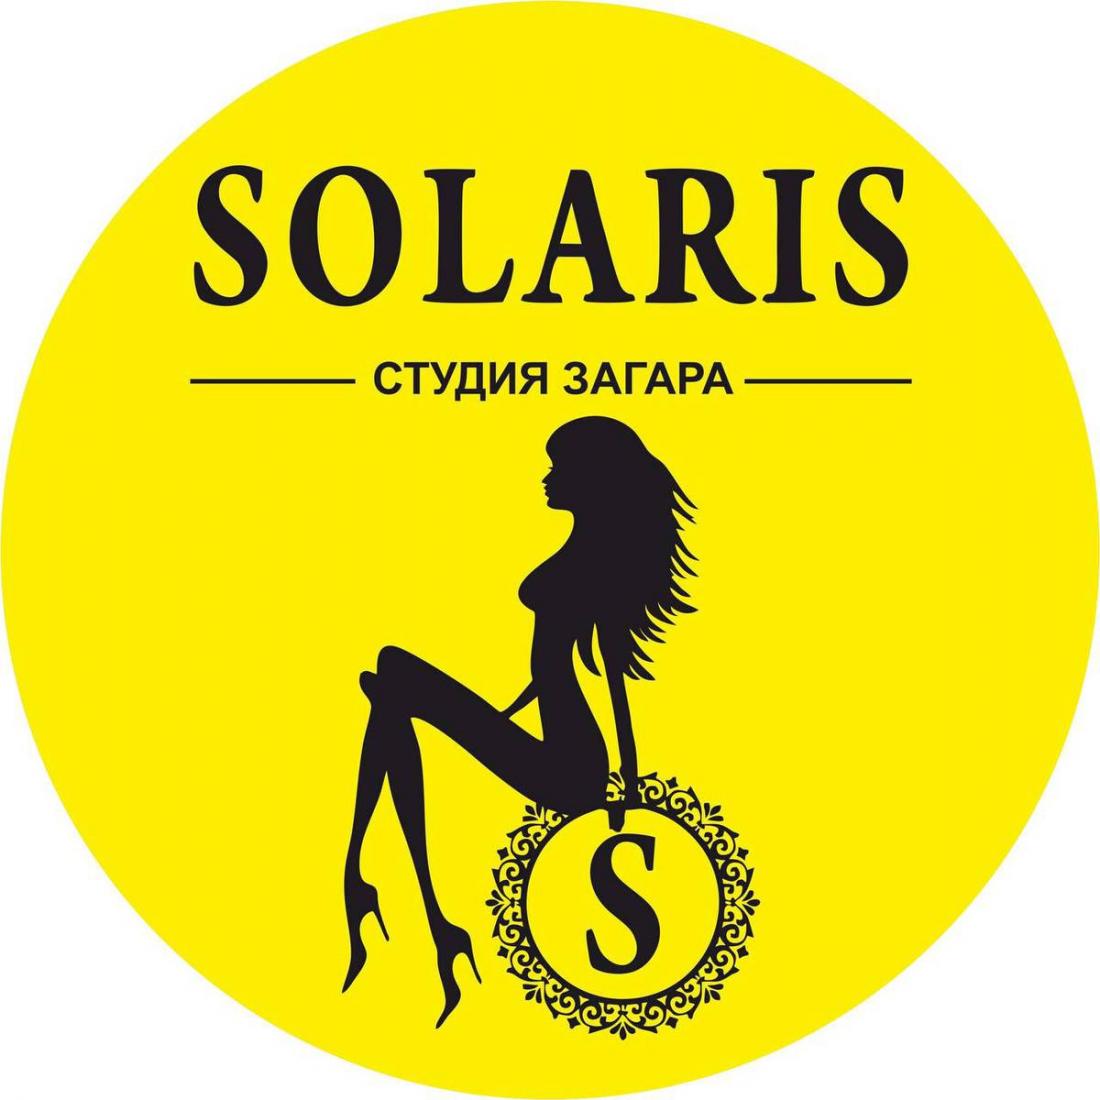 Вертикальный солярий от 0,78 р/мин в студии загара "Solaris" в Могилеве